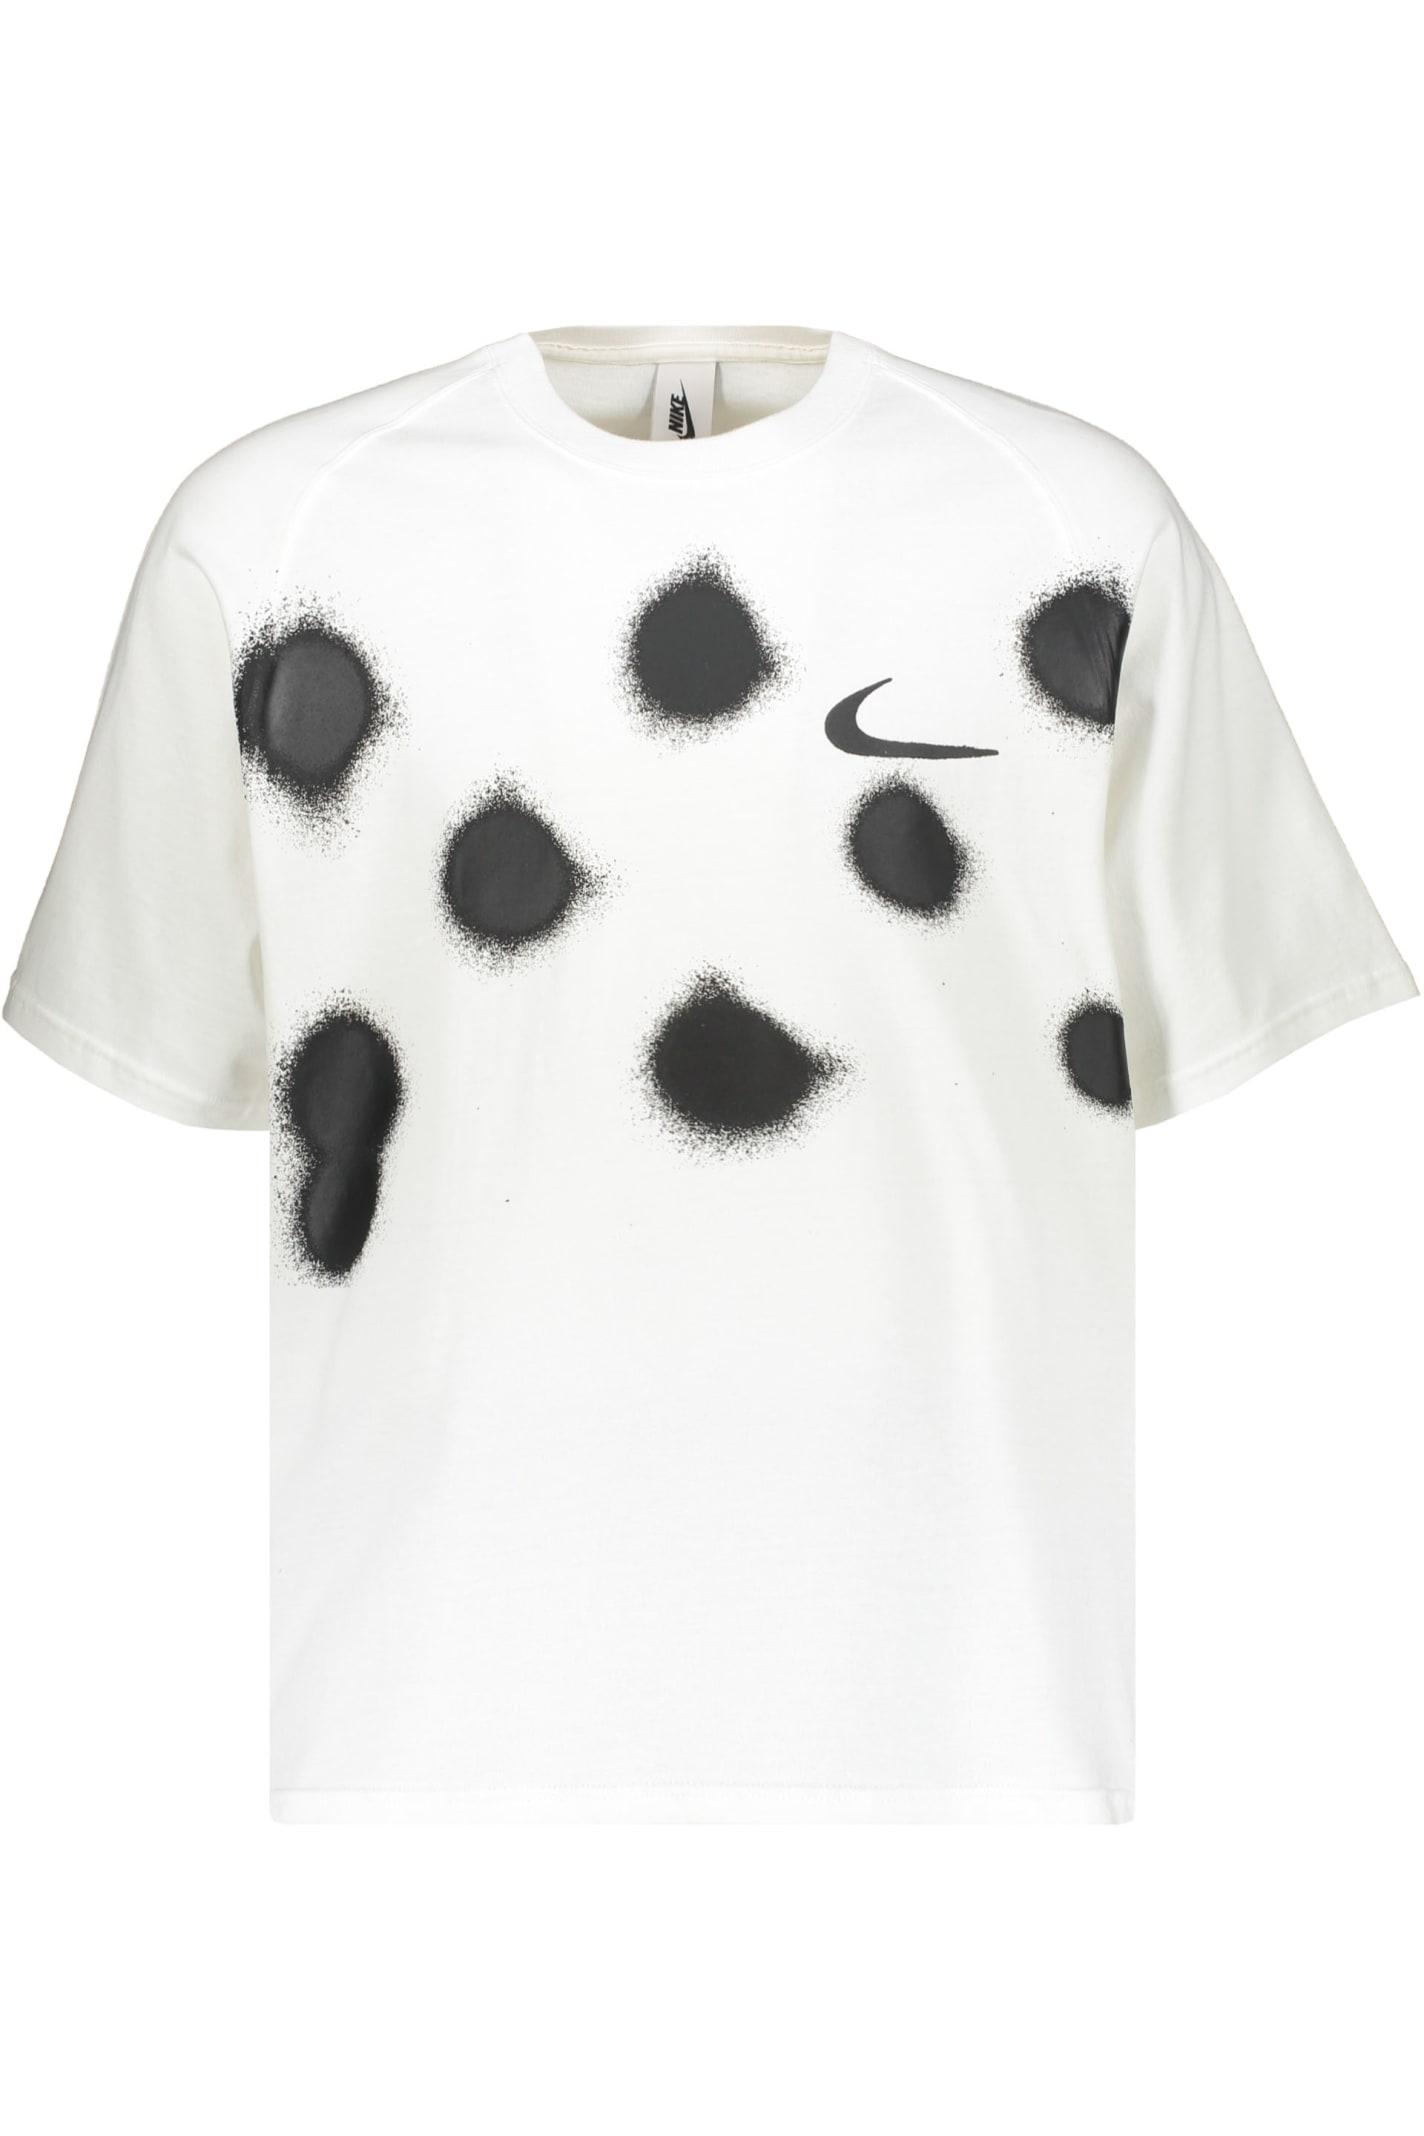 Off-White c/o Virgil Abloh Nike X Off White Short Sleeve T-shirt for Men |  Lyst